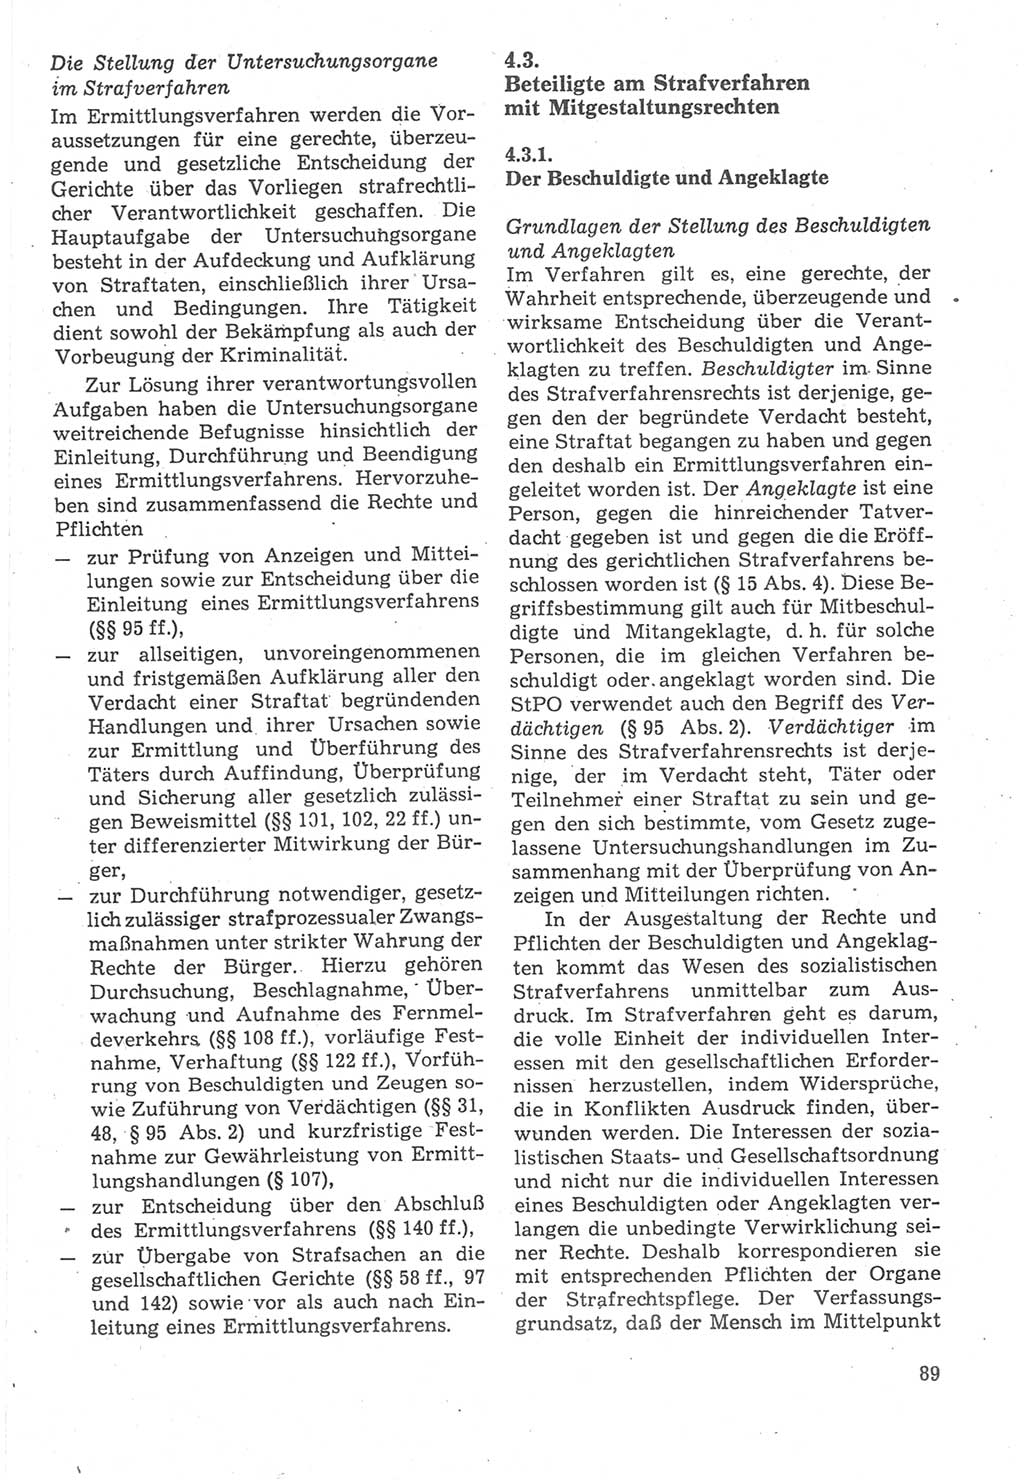 Strafverfahrensrecht [Deutsche Demokratische Republik (DDR)], Lehrbuch 1987, Seite 89 (Strafverf.-R. DDR Lb. 1987, S. 89)